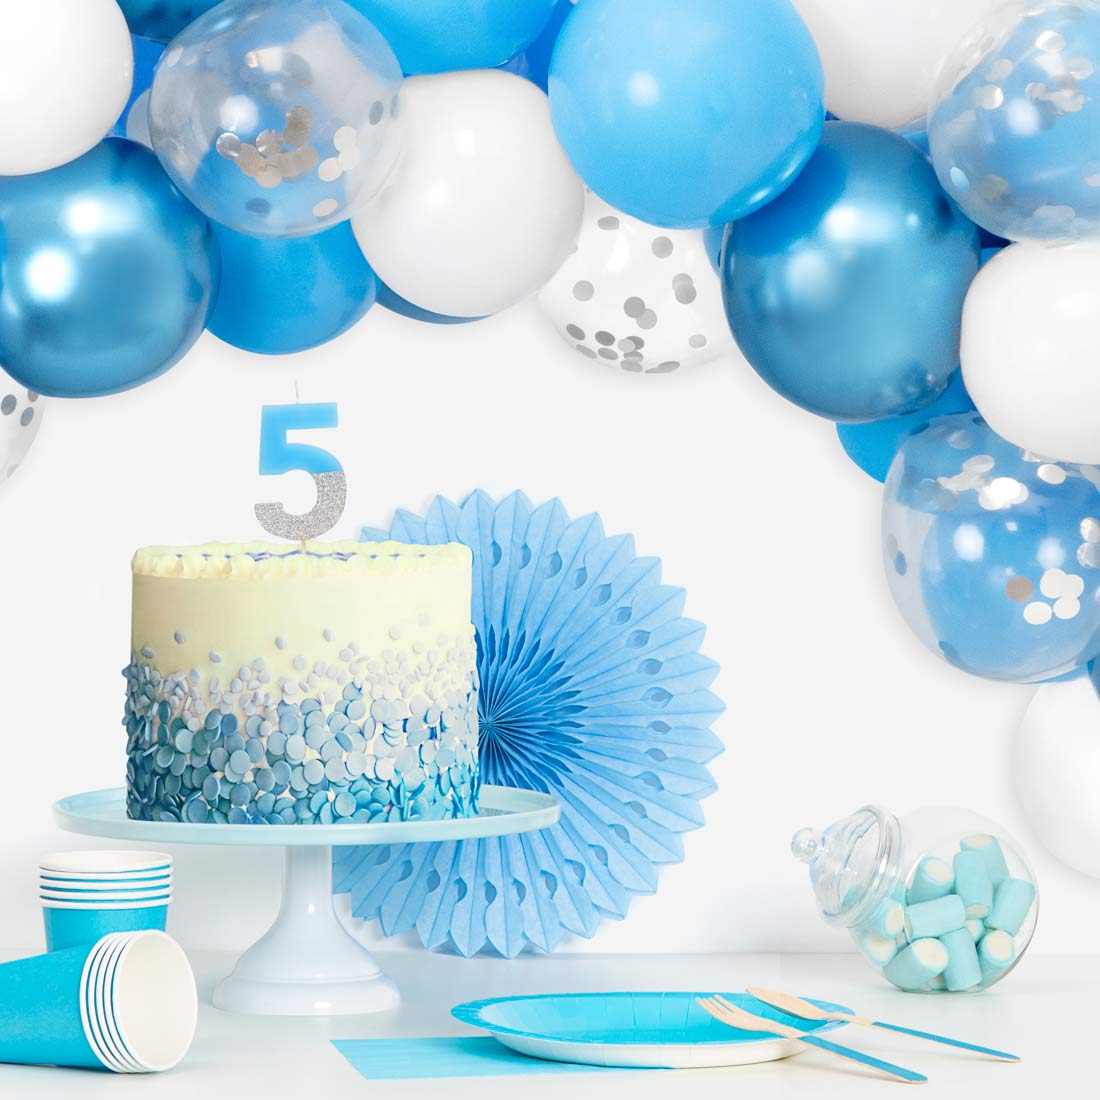 Set Arco Globos Azul, Blanco, Azul Metalizado y Transparentes con confeti